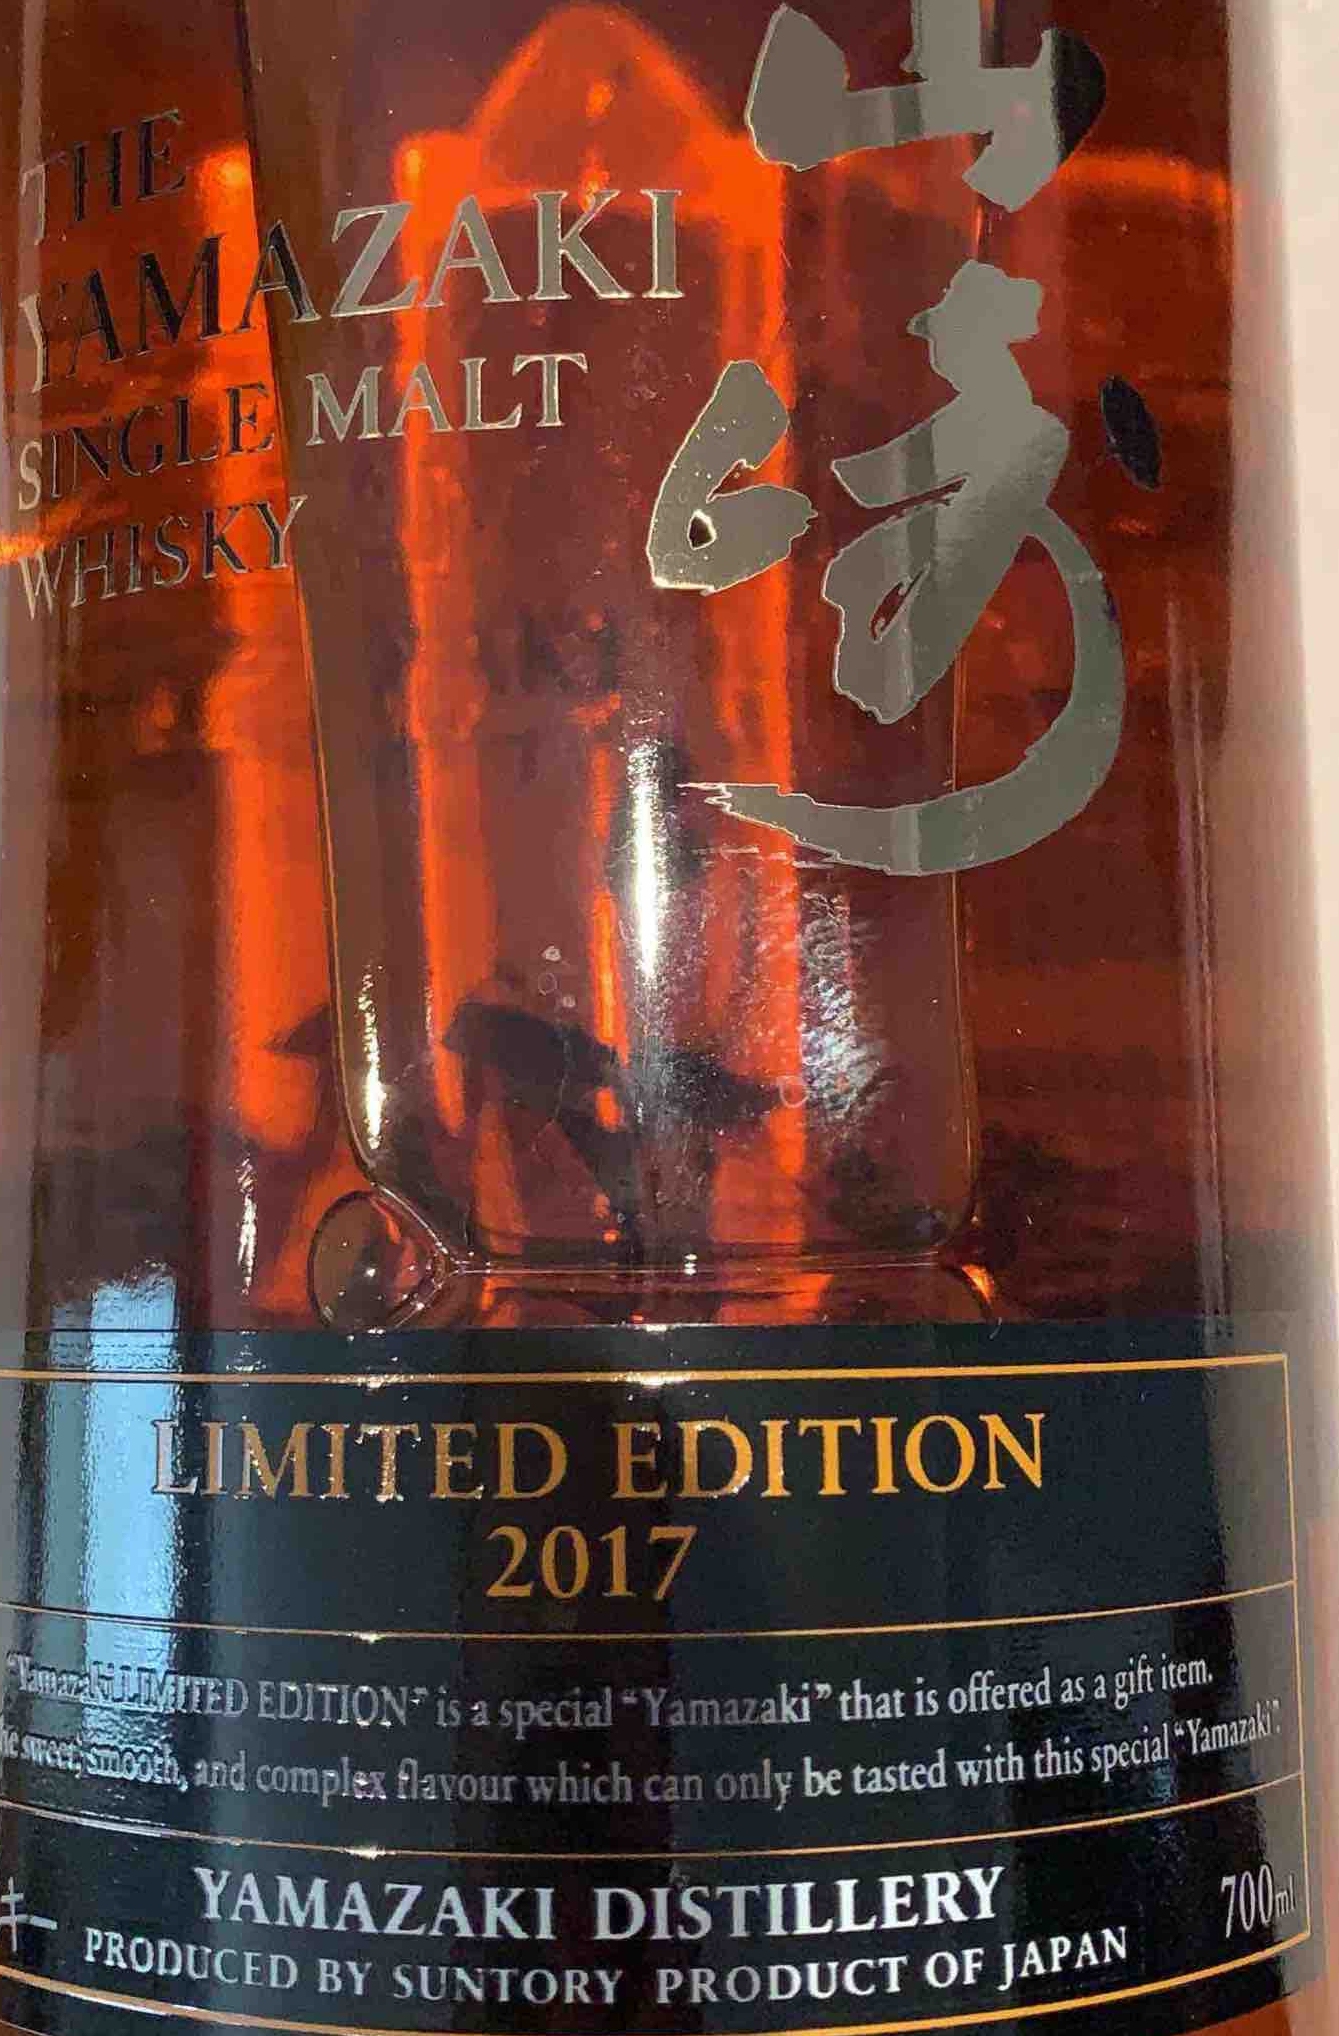 The Yamazaki Limited Edition Single Malt Japanese Whisky, Japan